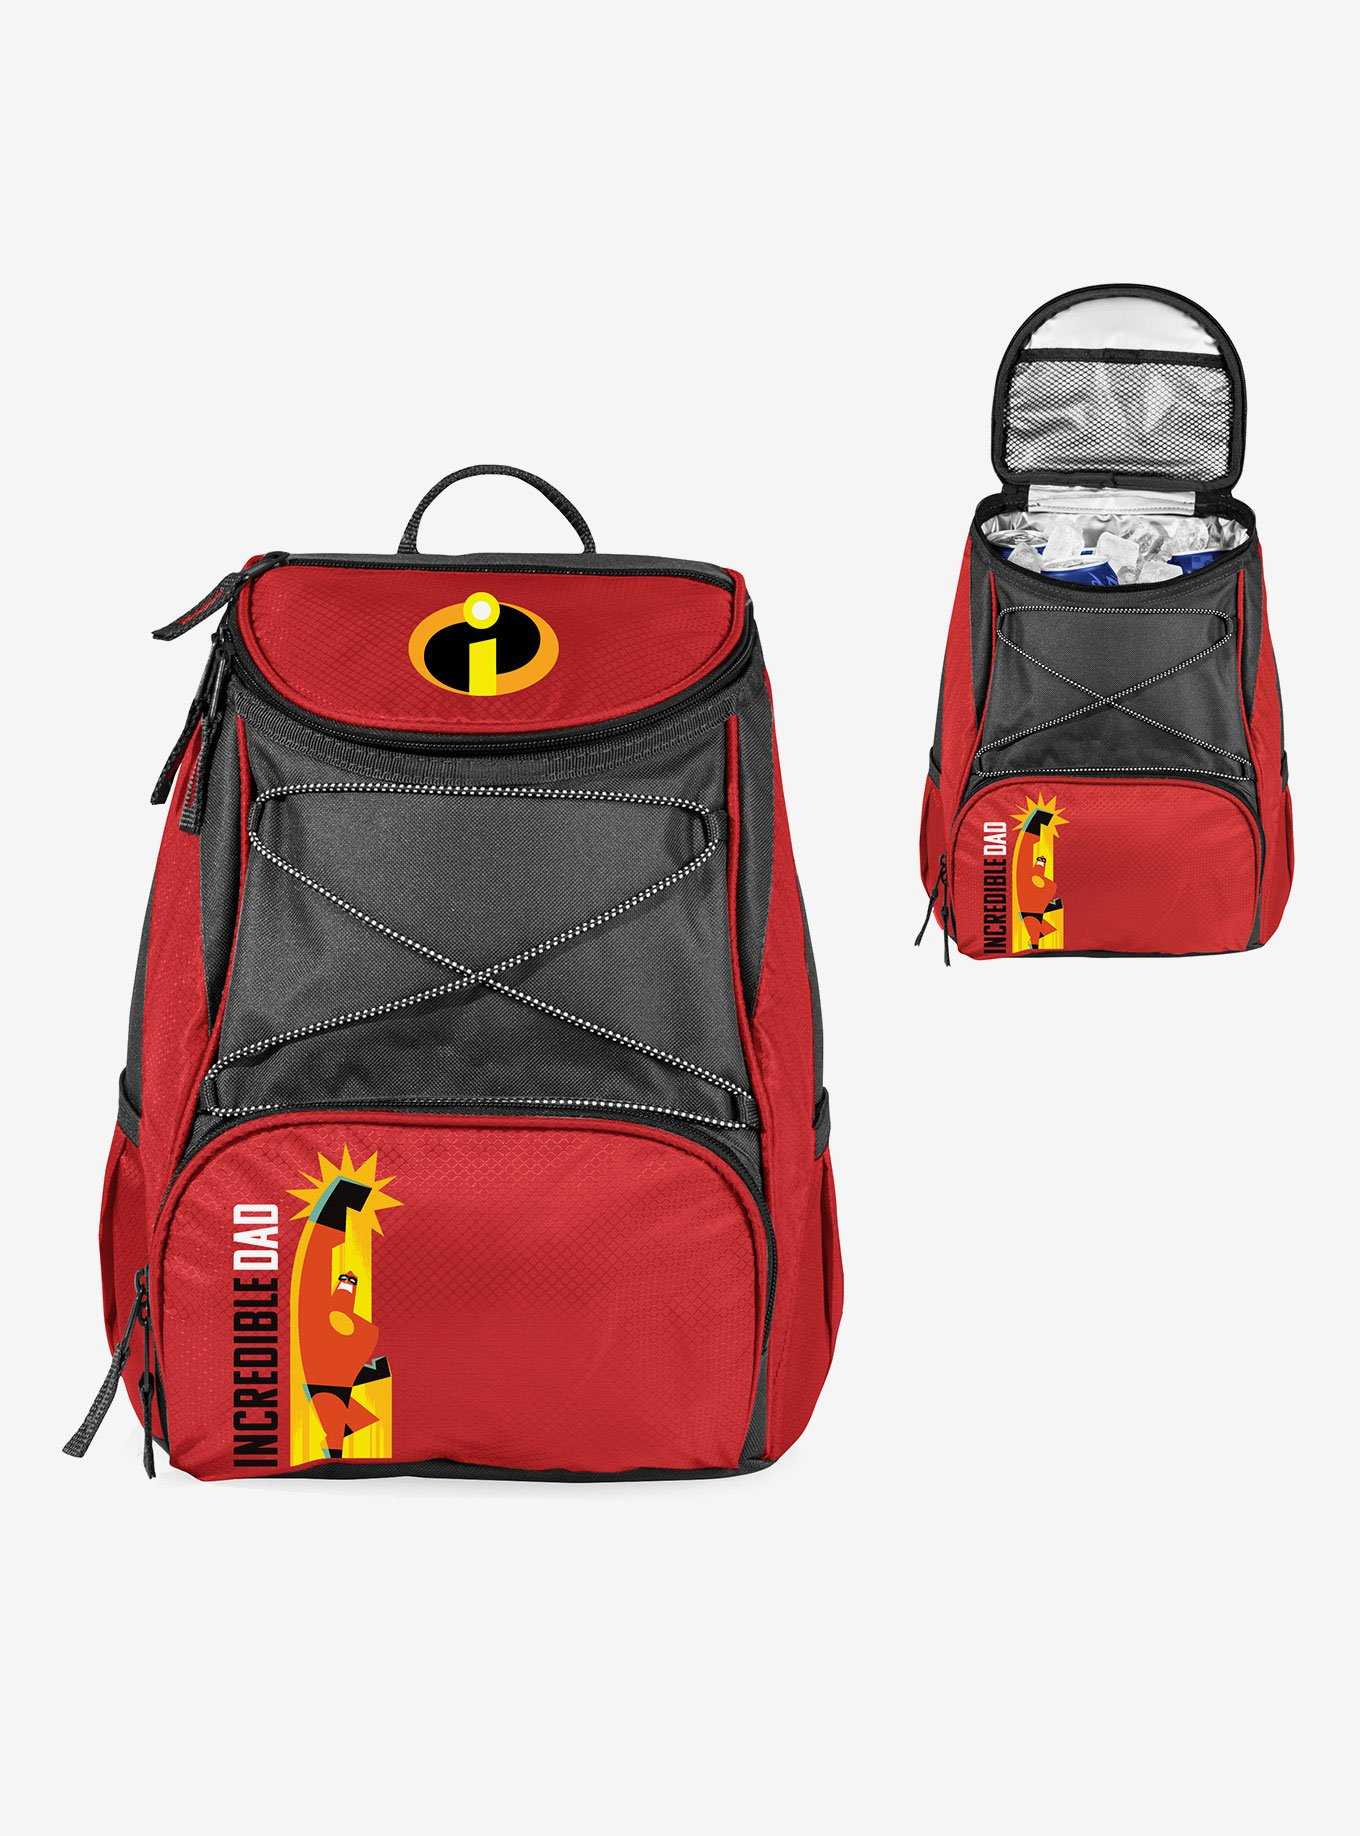 Disney Pixar The Incredibles: Mr. Incredible Cooler Backpack, , hi-res